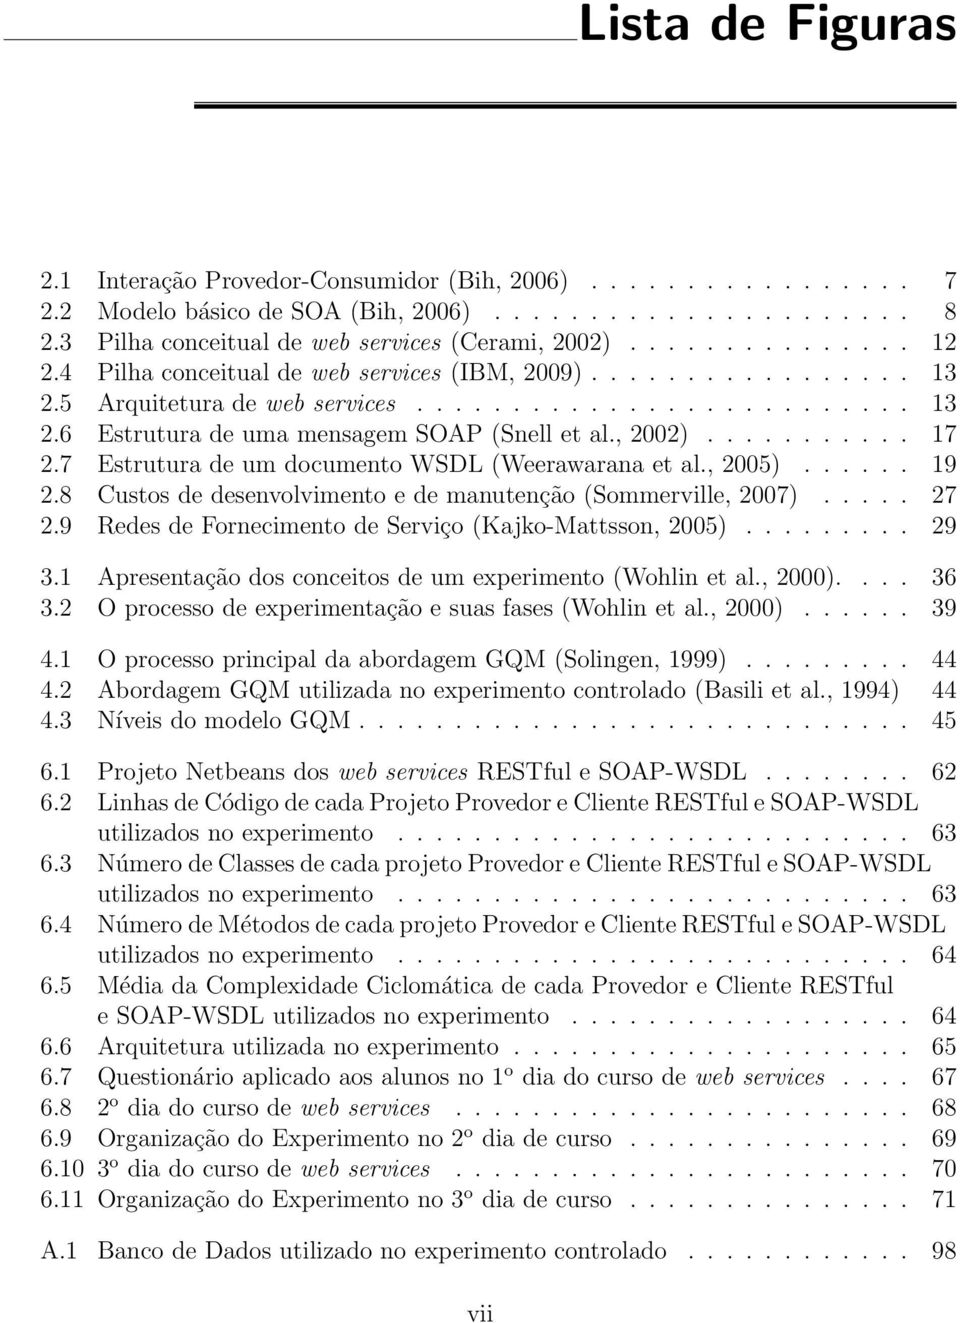 , 2002)........... 17 2.7 Estrutura de um documento WSDL (Weerawarana et al., 2005)...... 19 2.8 Custos de desenvolvimento e de manutenção (Sommerville, 2007)..... 27 2.